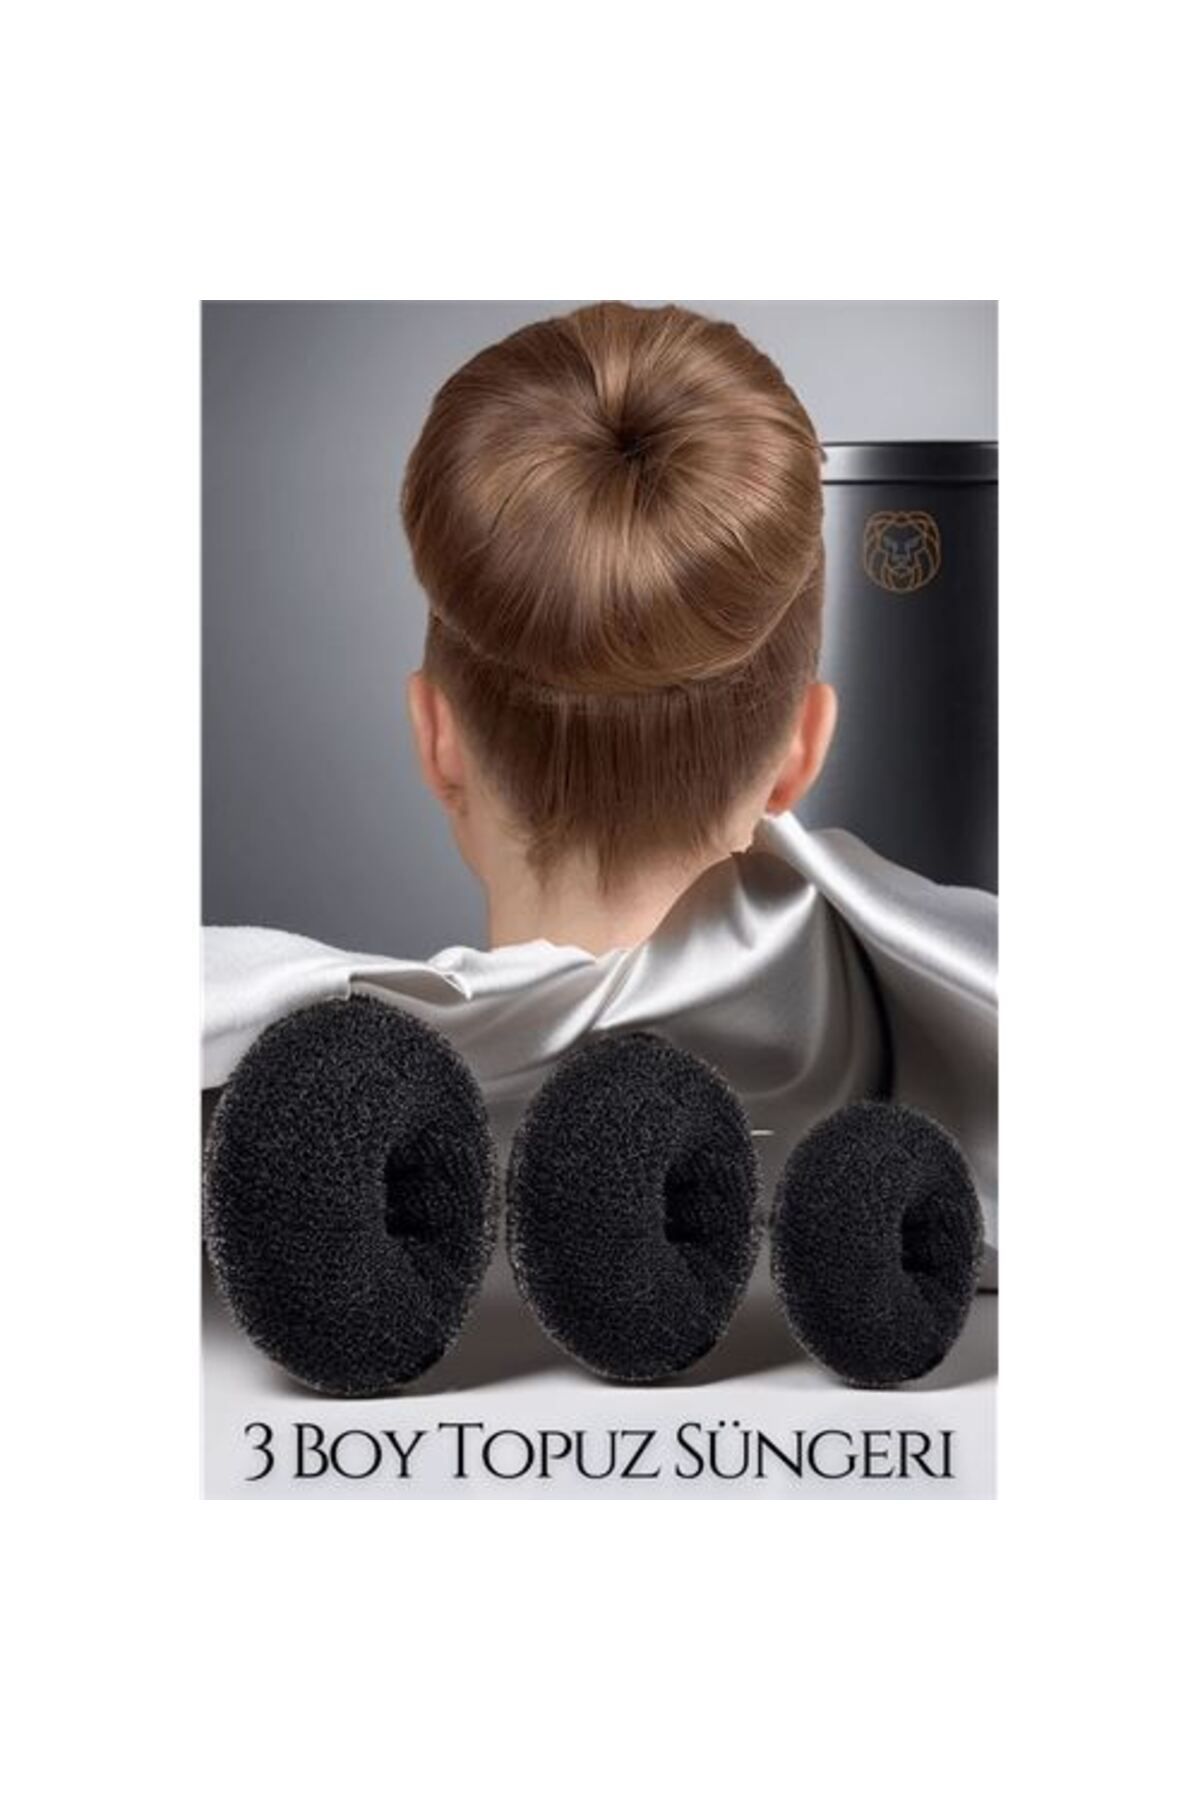 ModaCar Unisex Siyah Saç Topuz Süngeri 3 Boy Forero Design 719269